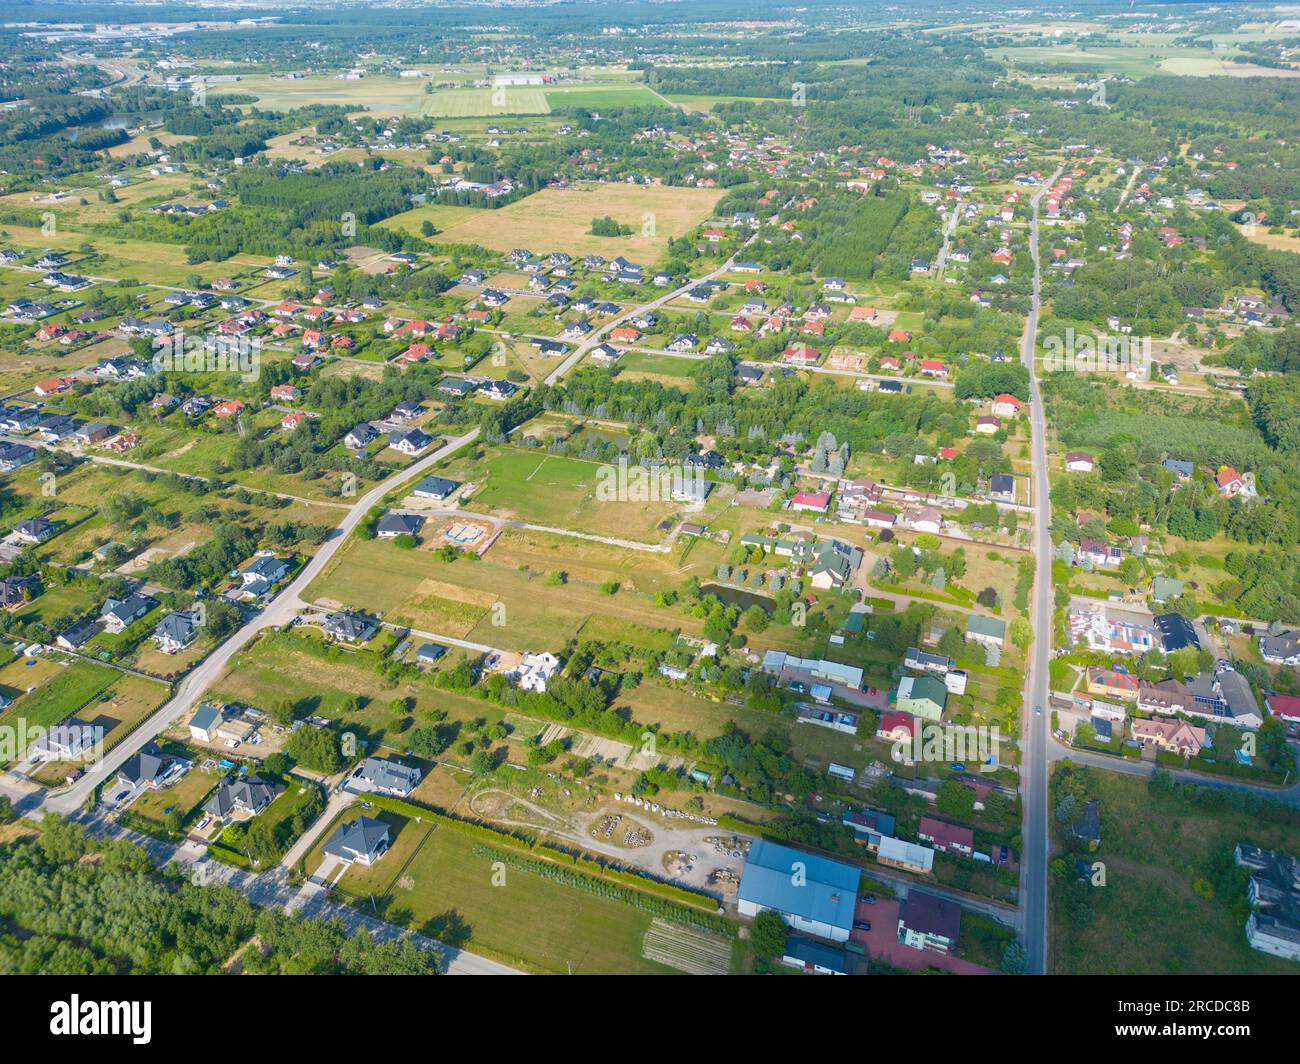 Foto aerea del villaggio di Case Drone residenziale sopra Vista S. Foto Stock